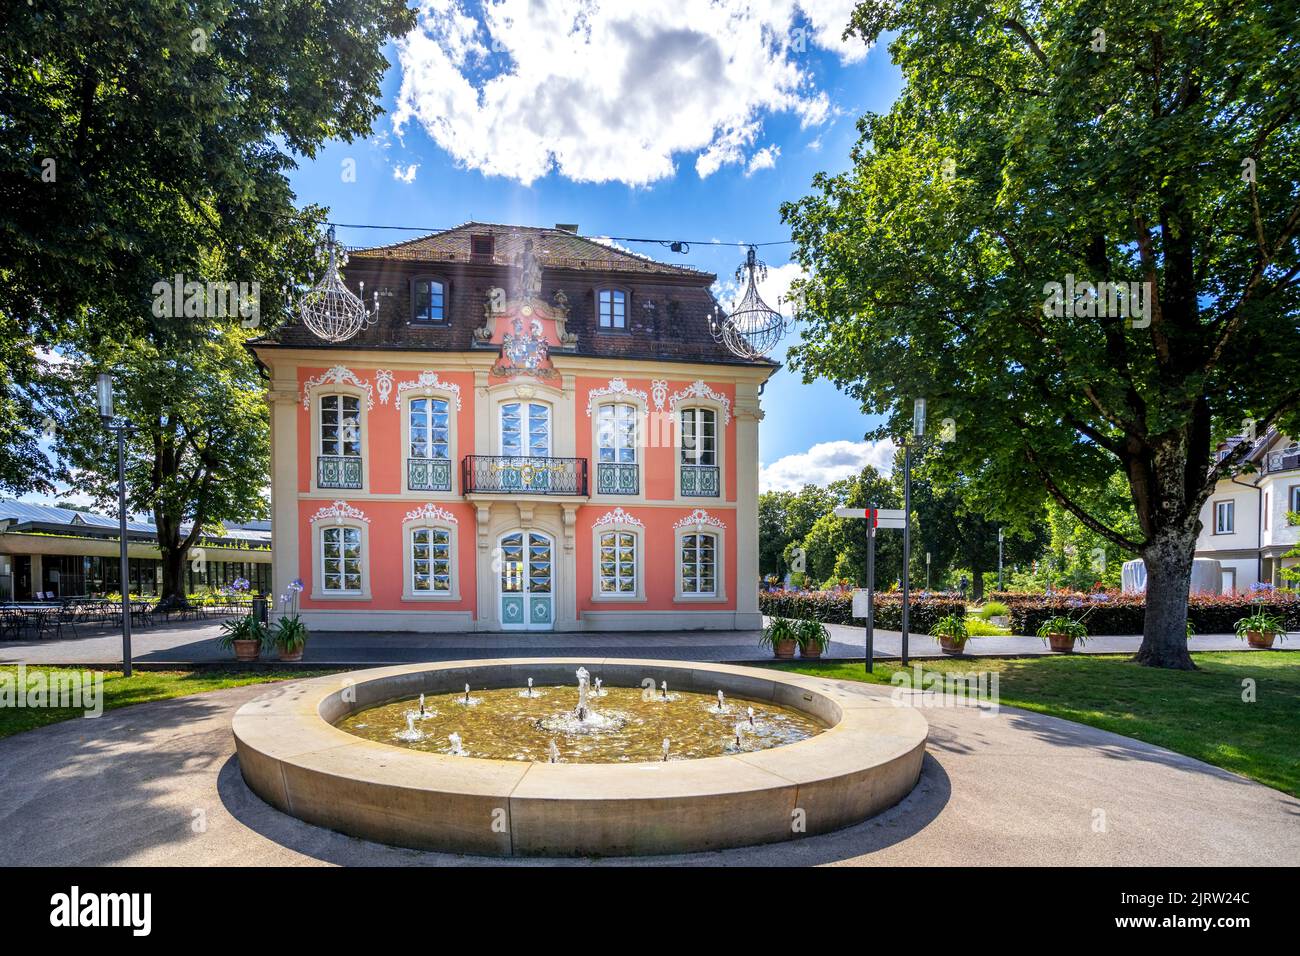 City garden of Schwaebisch Gmuend, Baden-Wuerttemberg, Germany Stock Photo